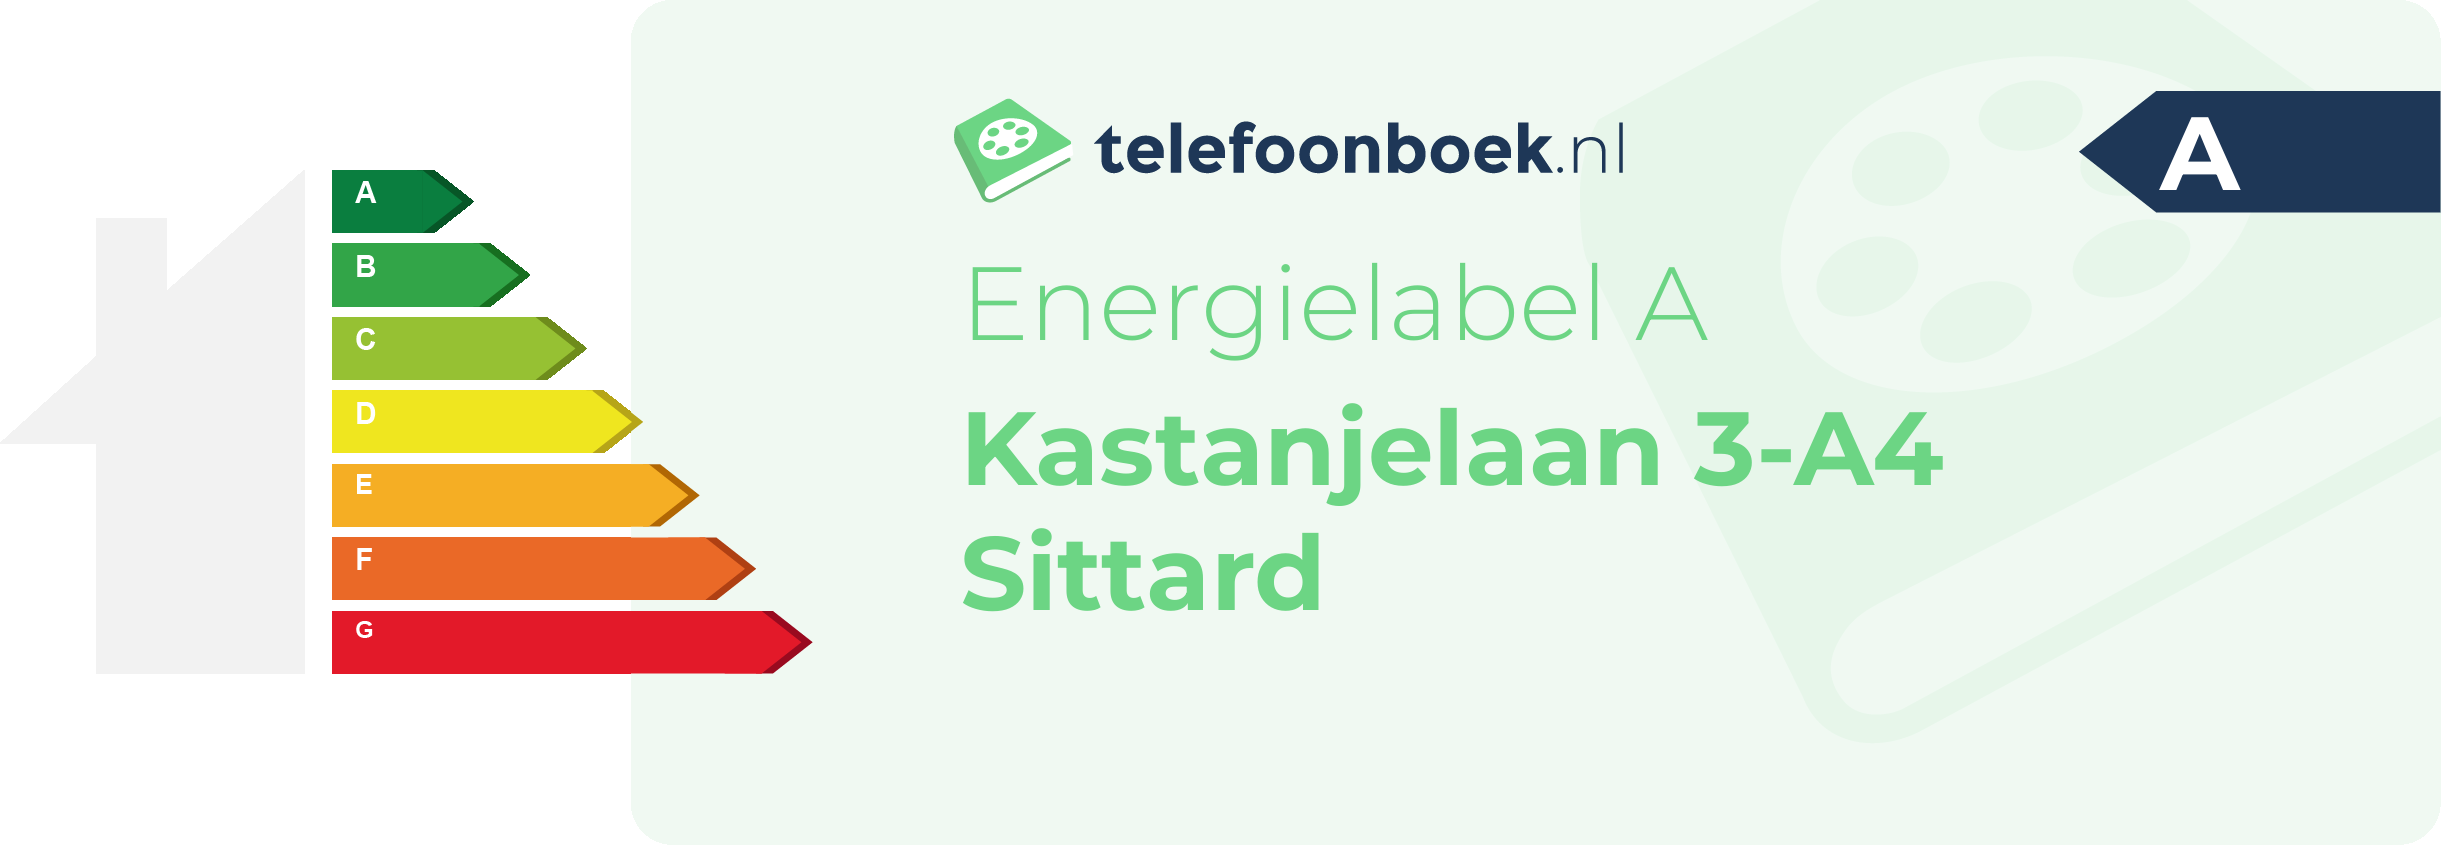 Energielabel Kastanjelaan 3-A4 Sittard